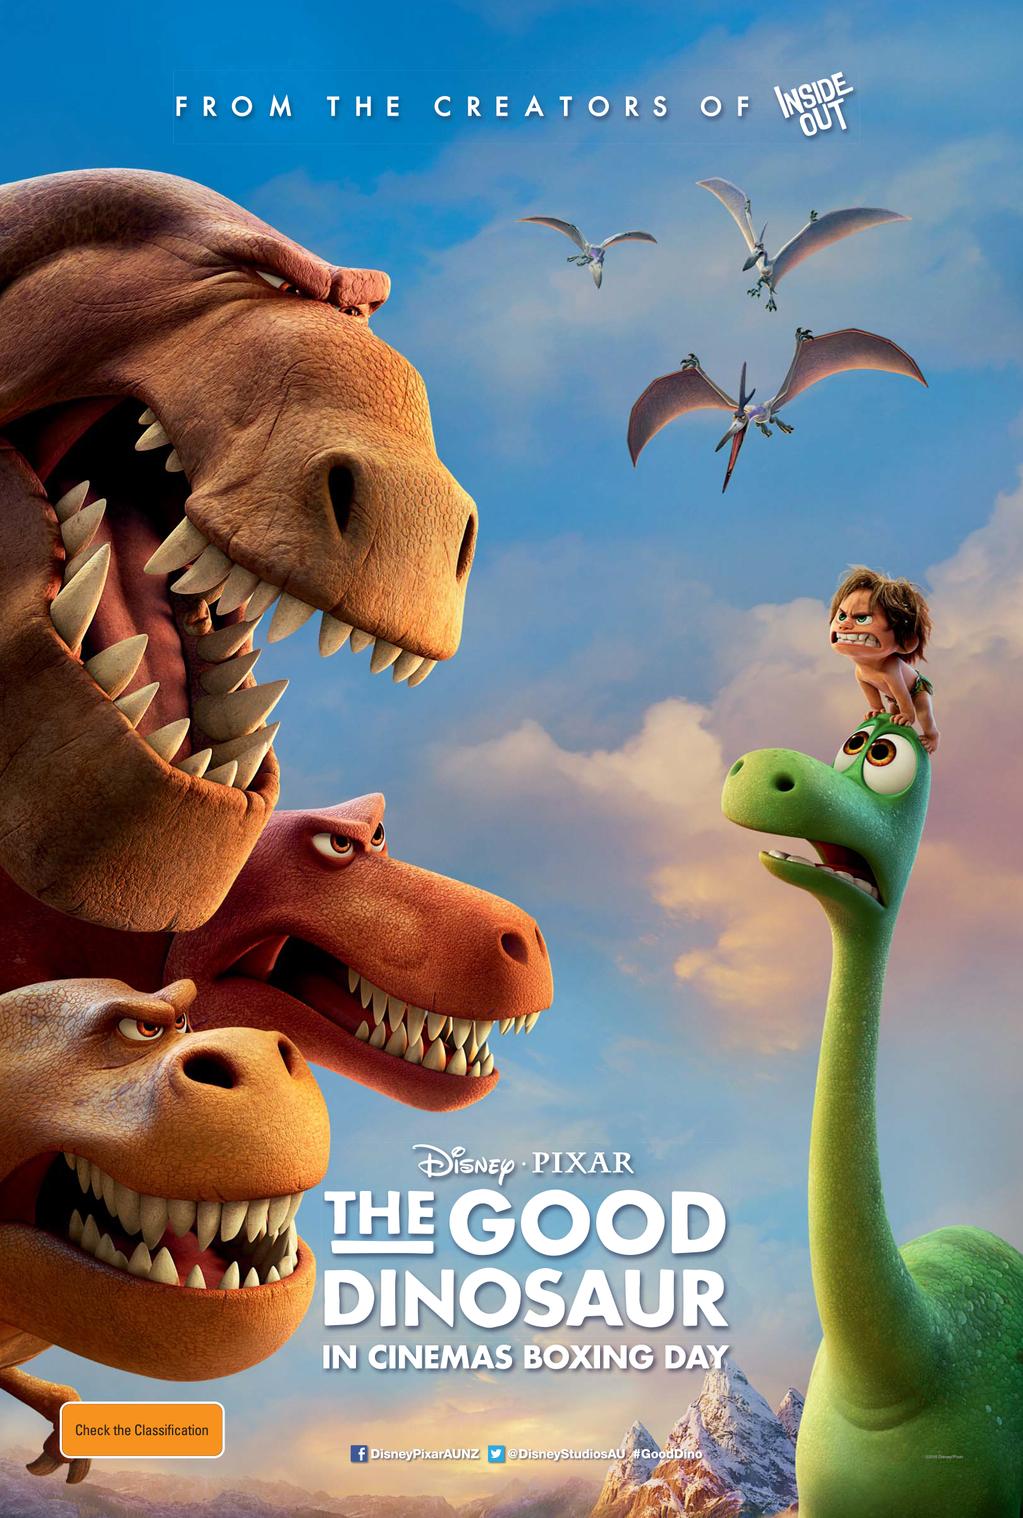 O Bom Dinossauro: primeiro vídeo e pôster da animação da Disney/Pixar -  TecMundo